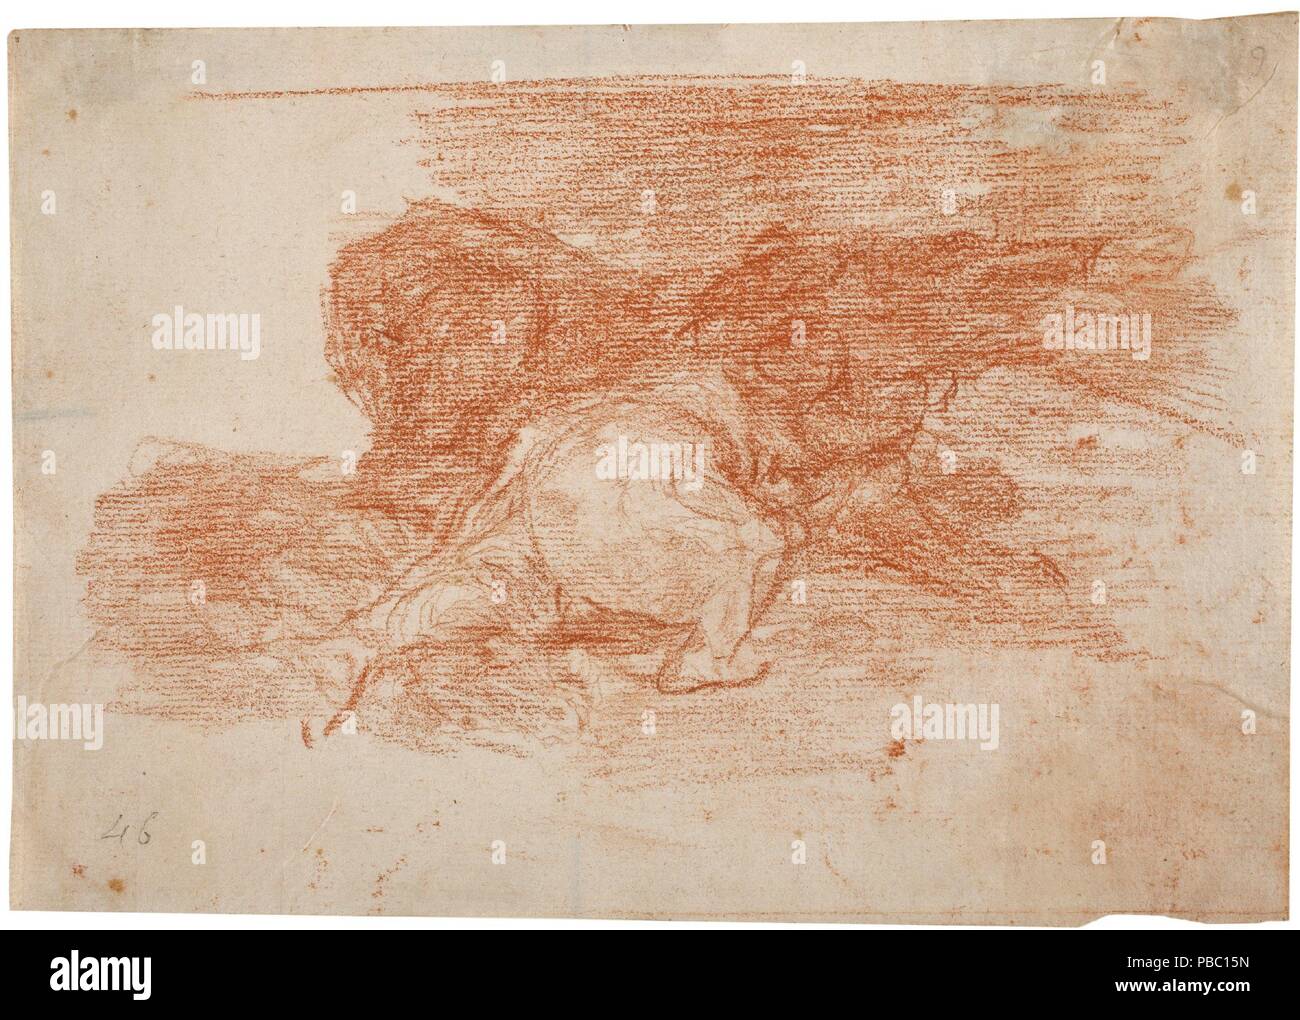 Francisco de Goya y Lucientes/'er etwas aus dem Ruder läuft". 1814 - 1815. Rote Kreide auf Elfenbein Bütten. Museum: Museo del Prado, Madrid, España. Stockfoto